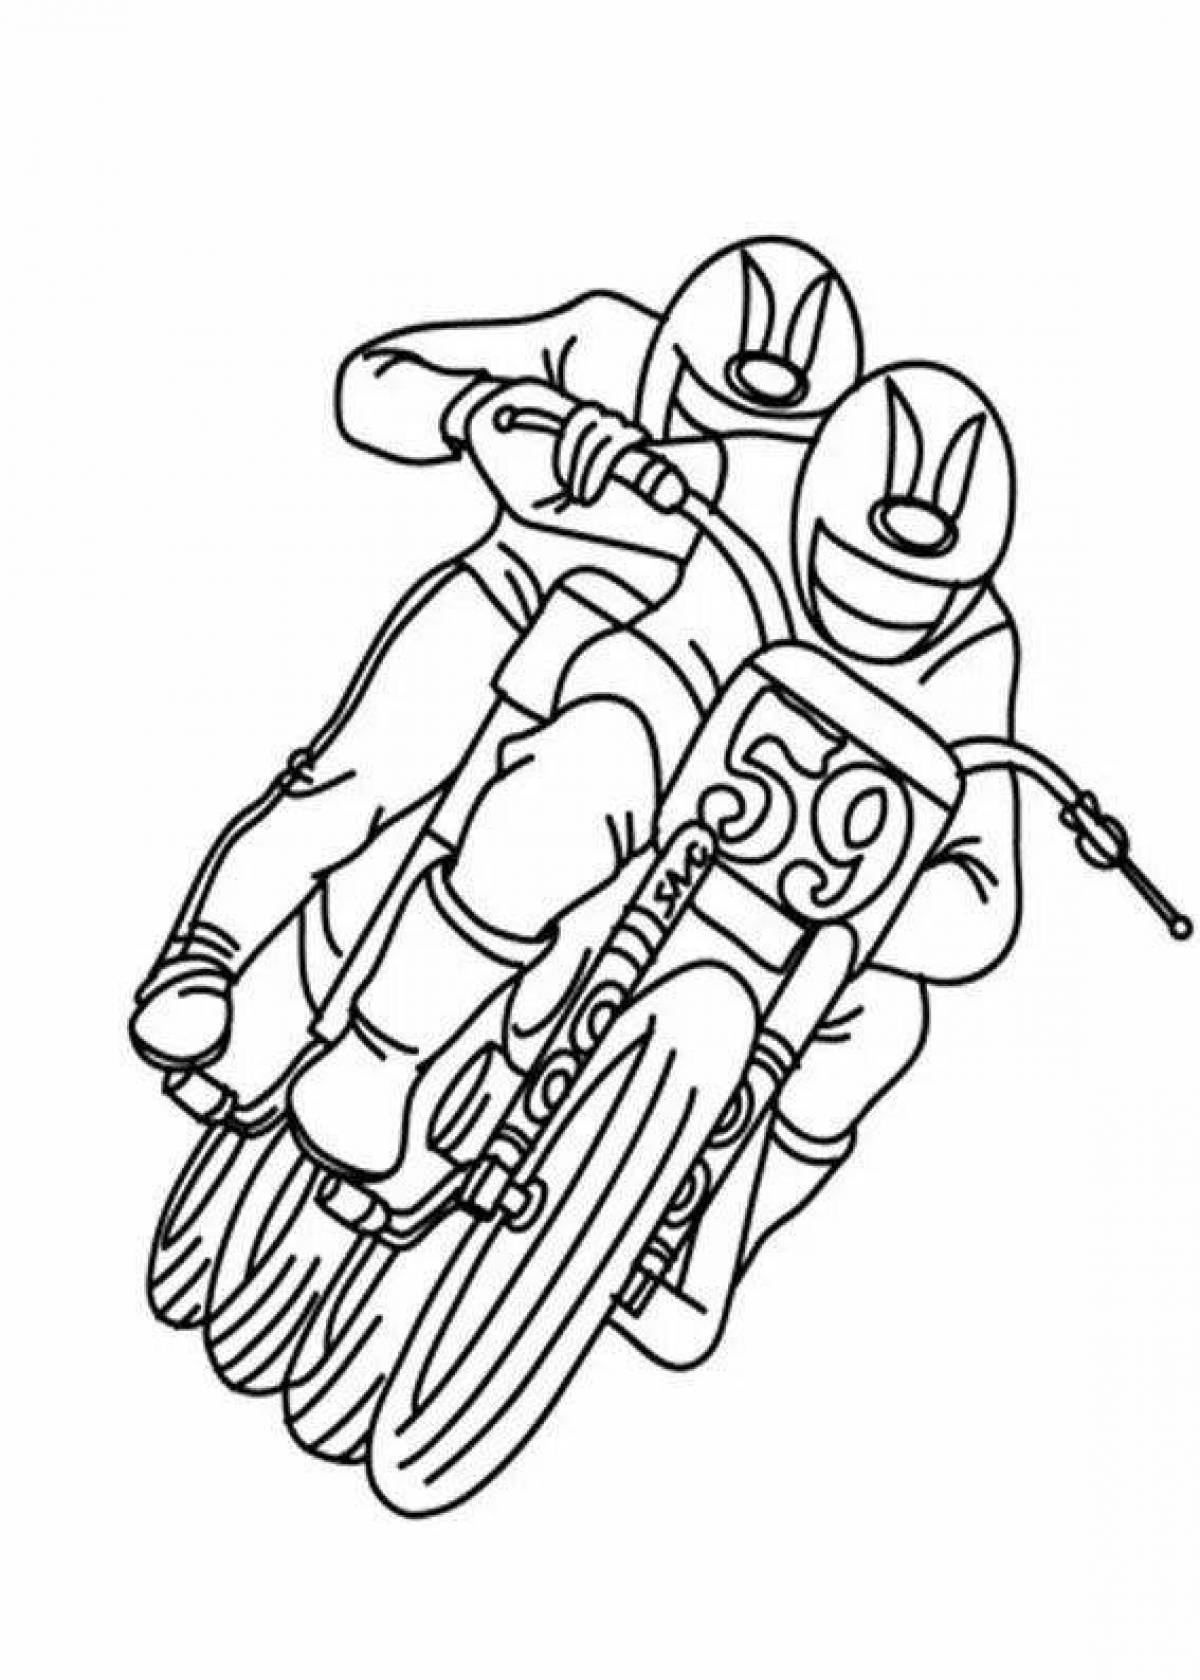 Гоночный мотоцикл раскраска